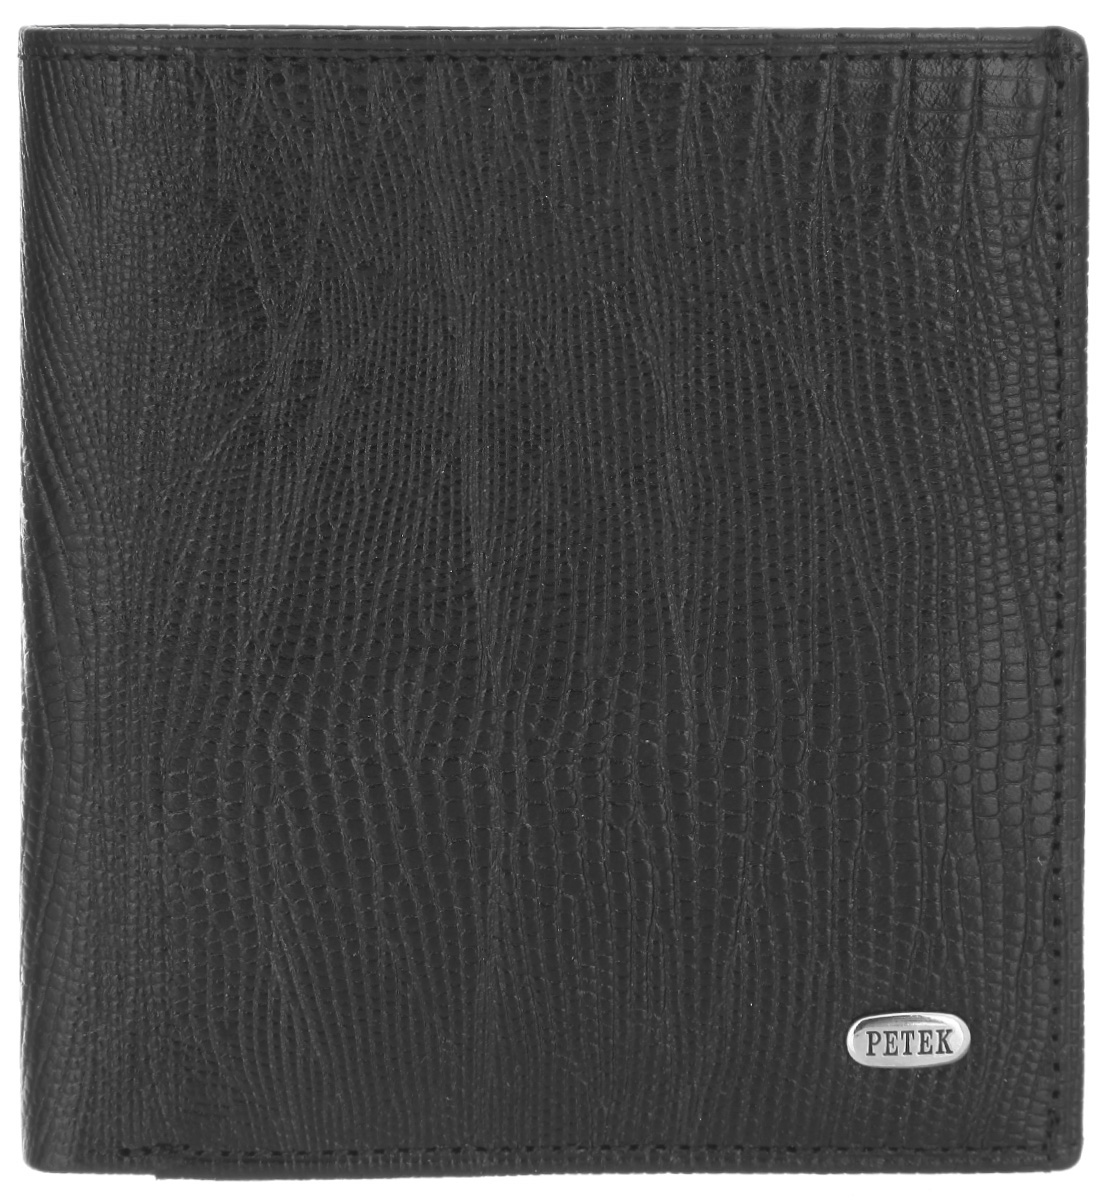 Портмоне мужское Petek 1855, цвет: черный. 212.041.01